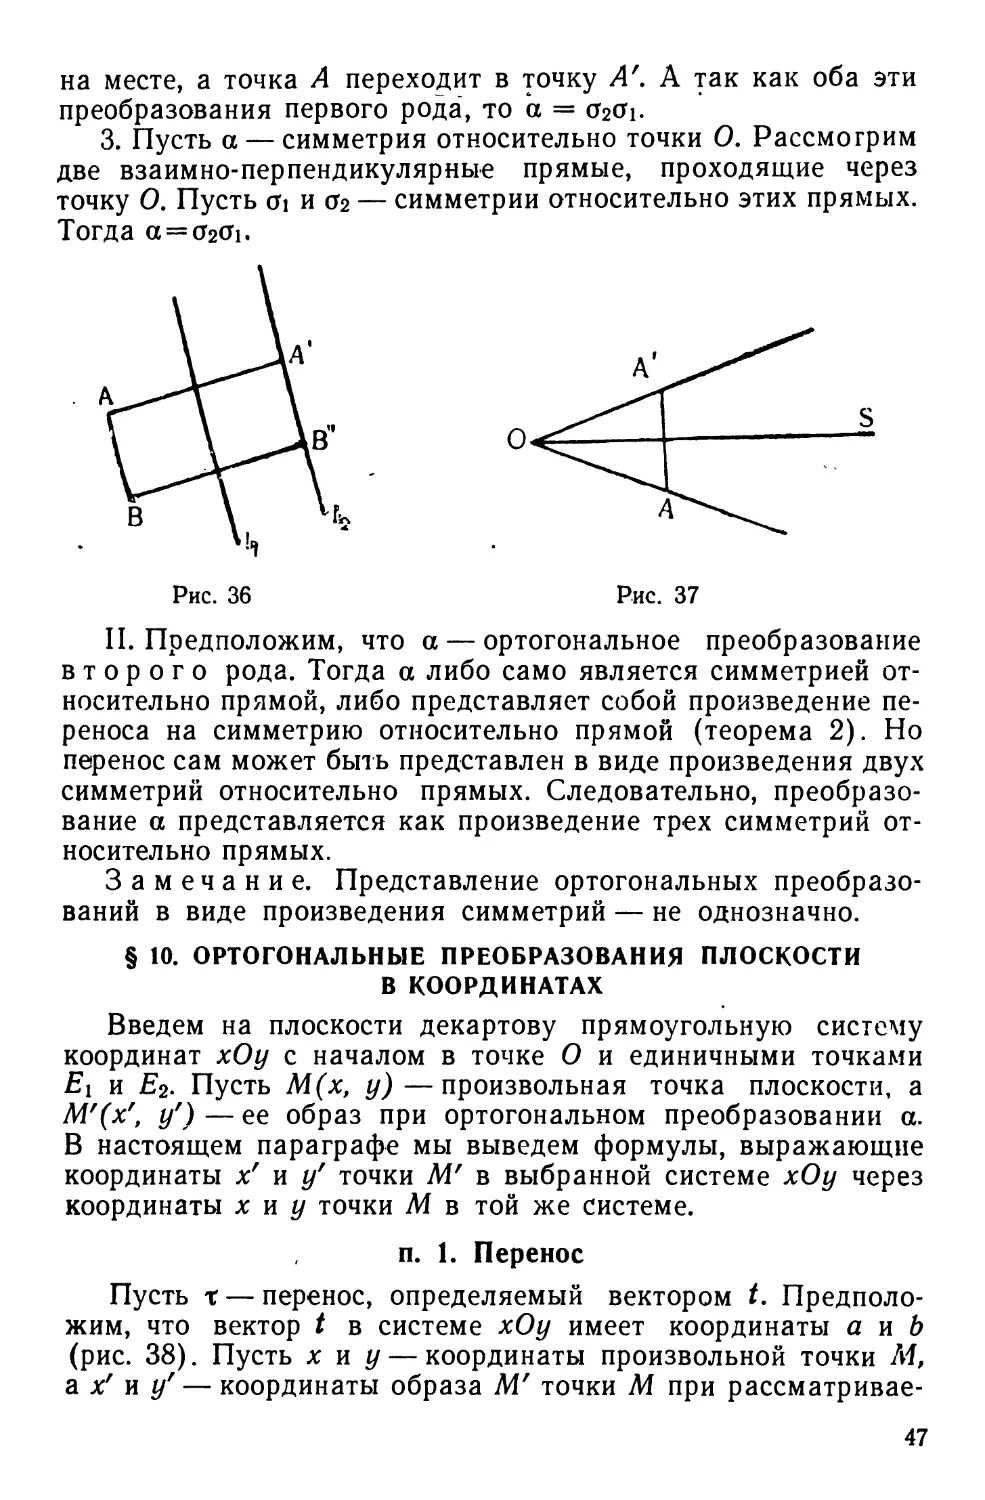 § 10. Ортогональные преобразования плоскости в координатах